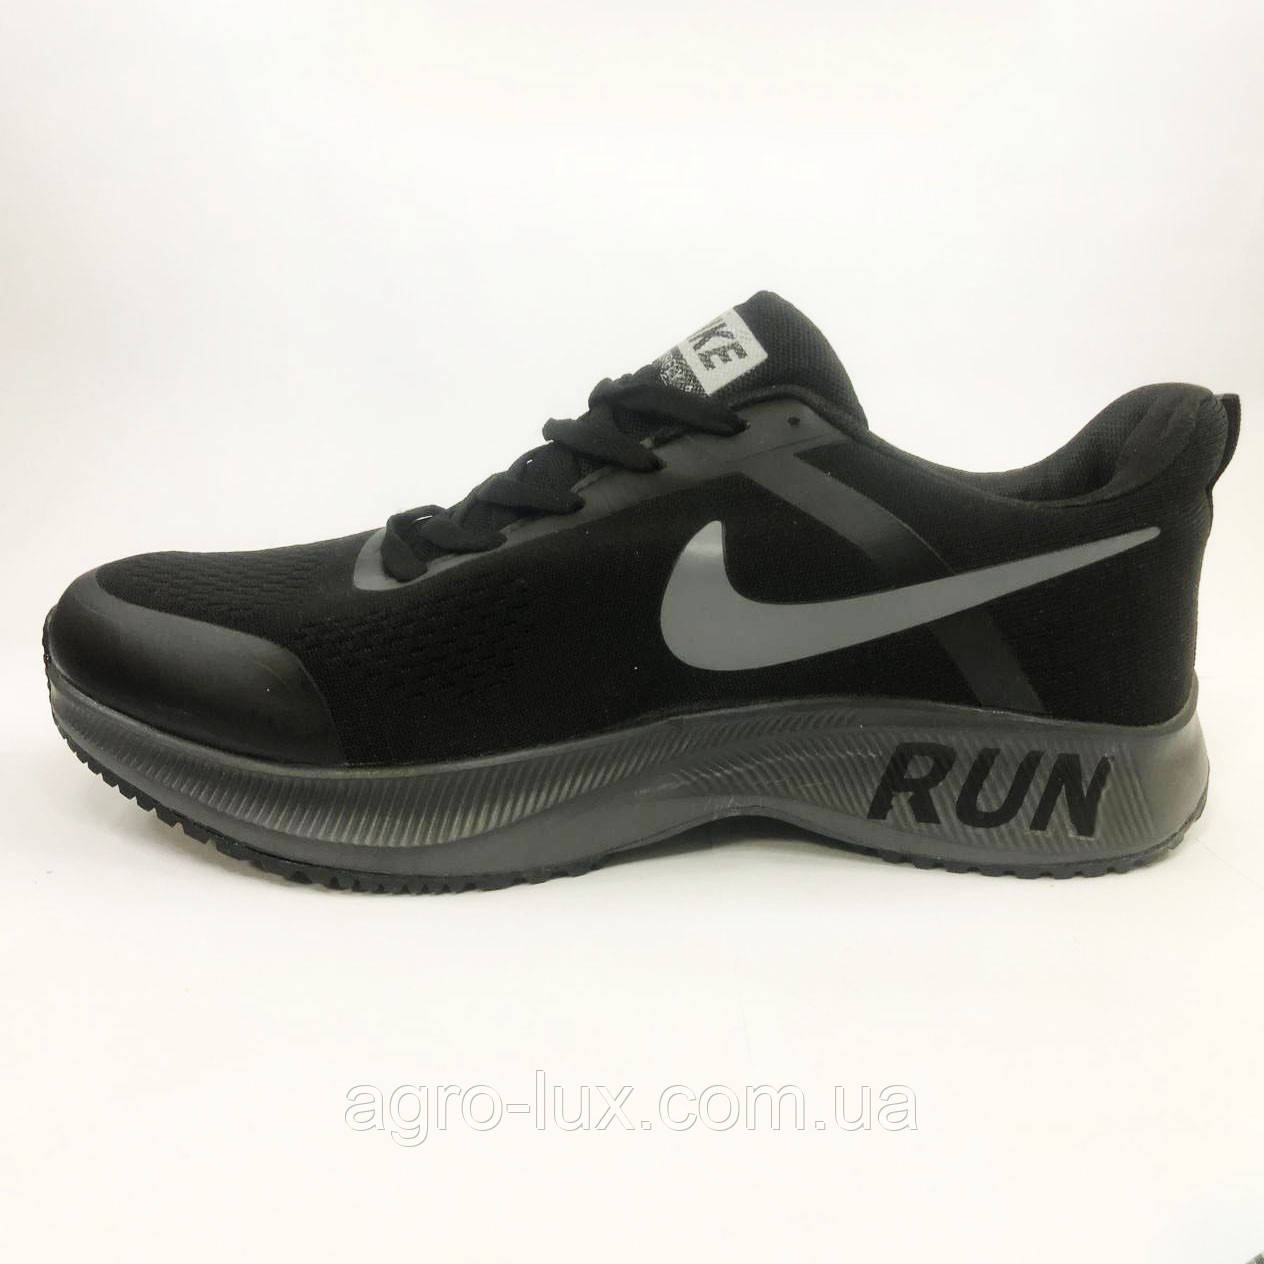 Чоловічі кросівки Nike Air Run 21655. Розмір 41, фото 1